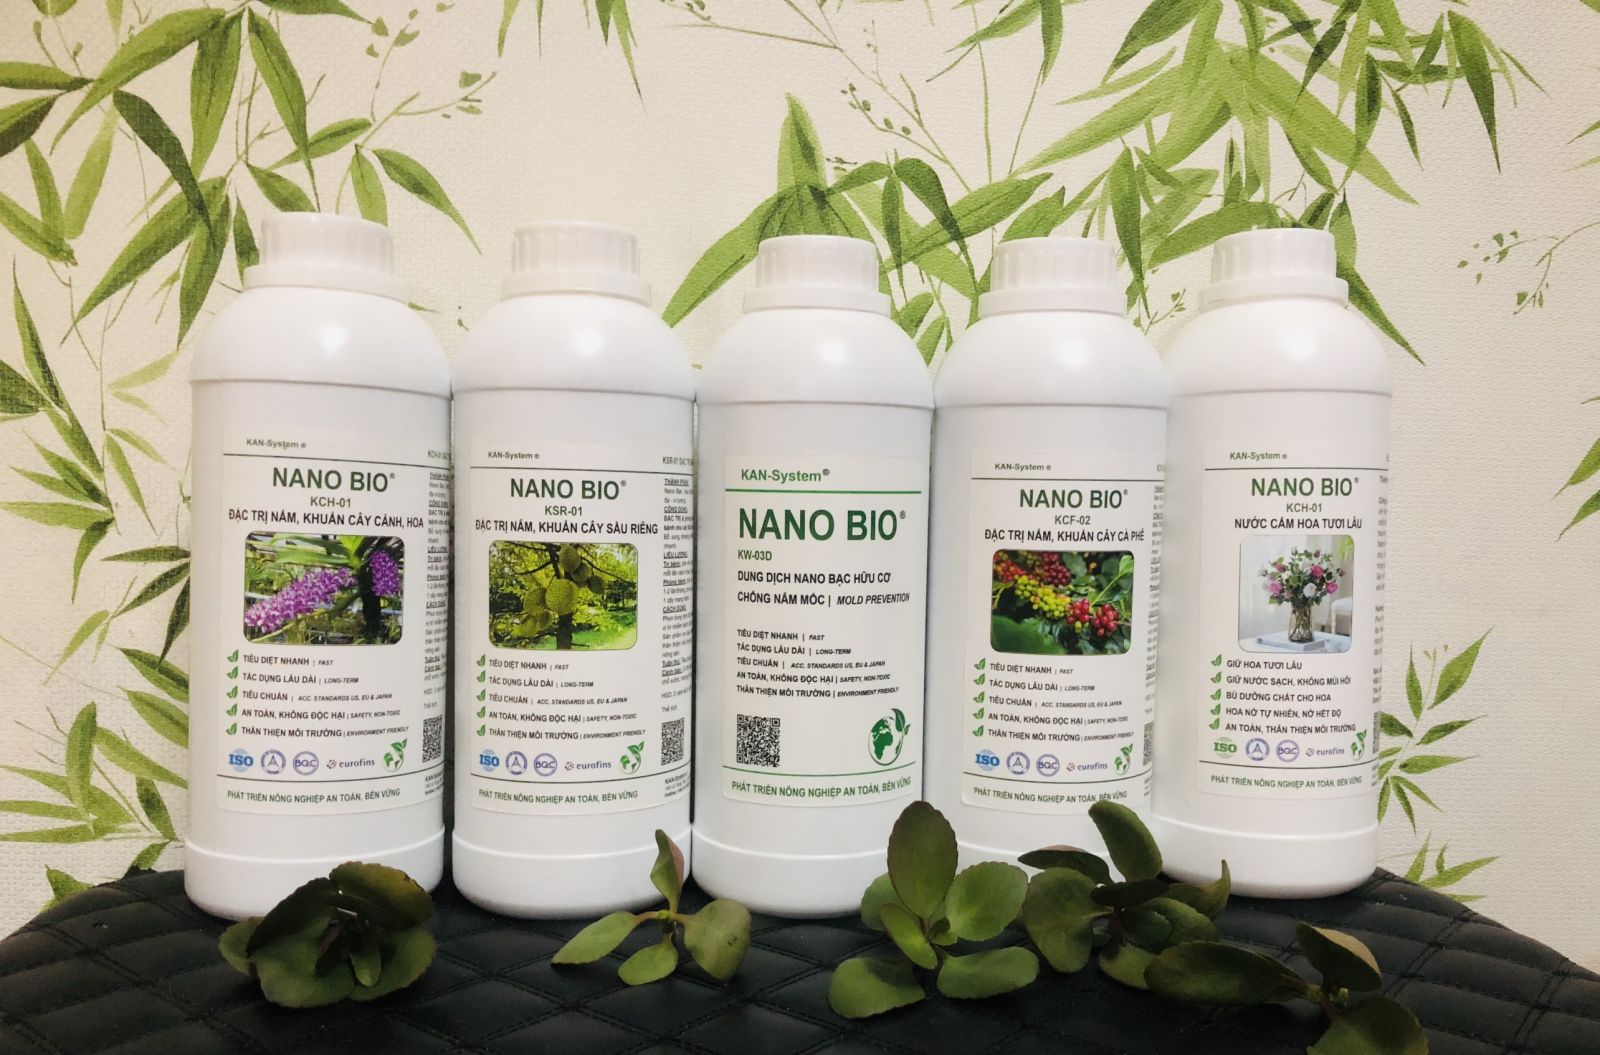 NANO BIO: ĐẶC TRỊ & phòng chống bệnh do nấm, vi khuẩn gây bệnh cho cây Măng cụt